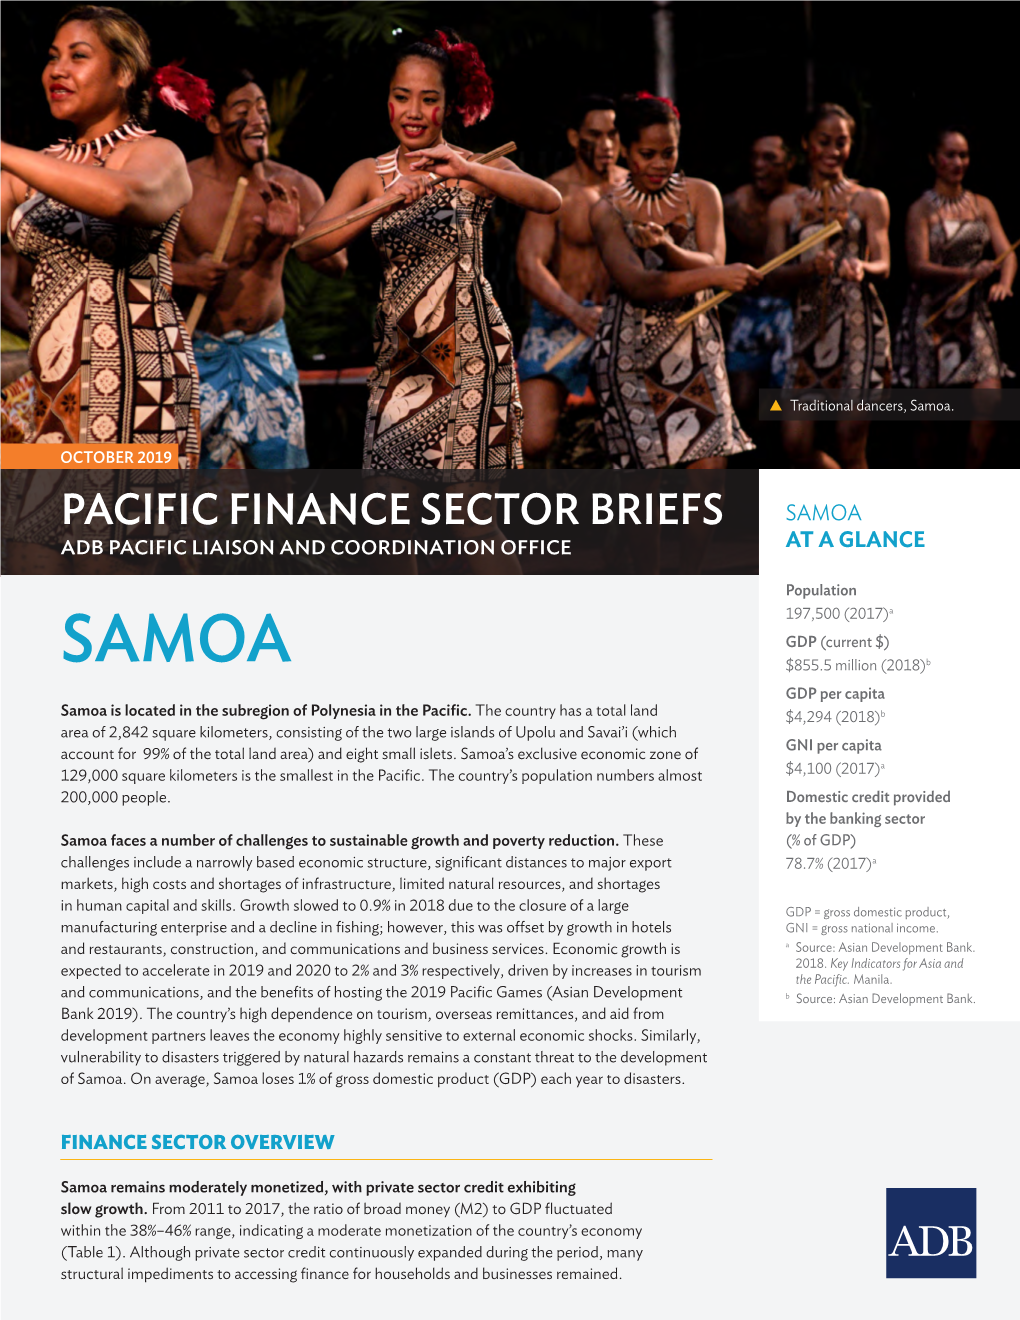 Pacific Finance Sector Brief: Samoa